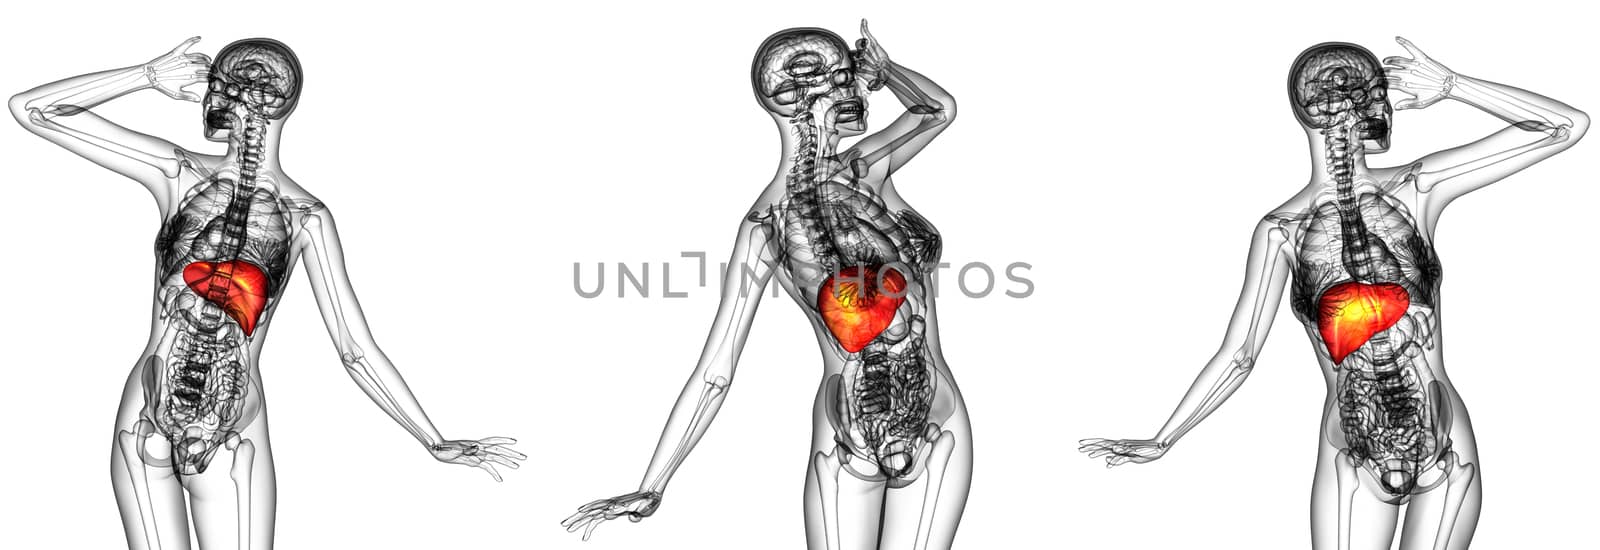 3d rendering medical illustration of the human liver